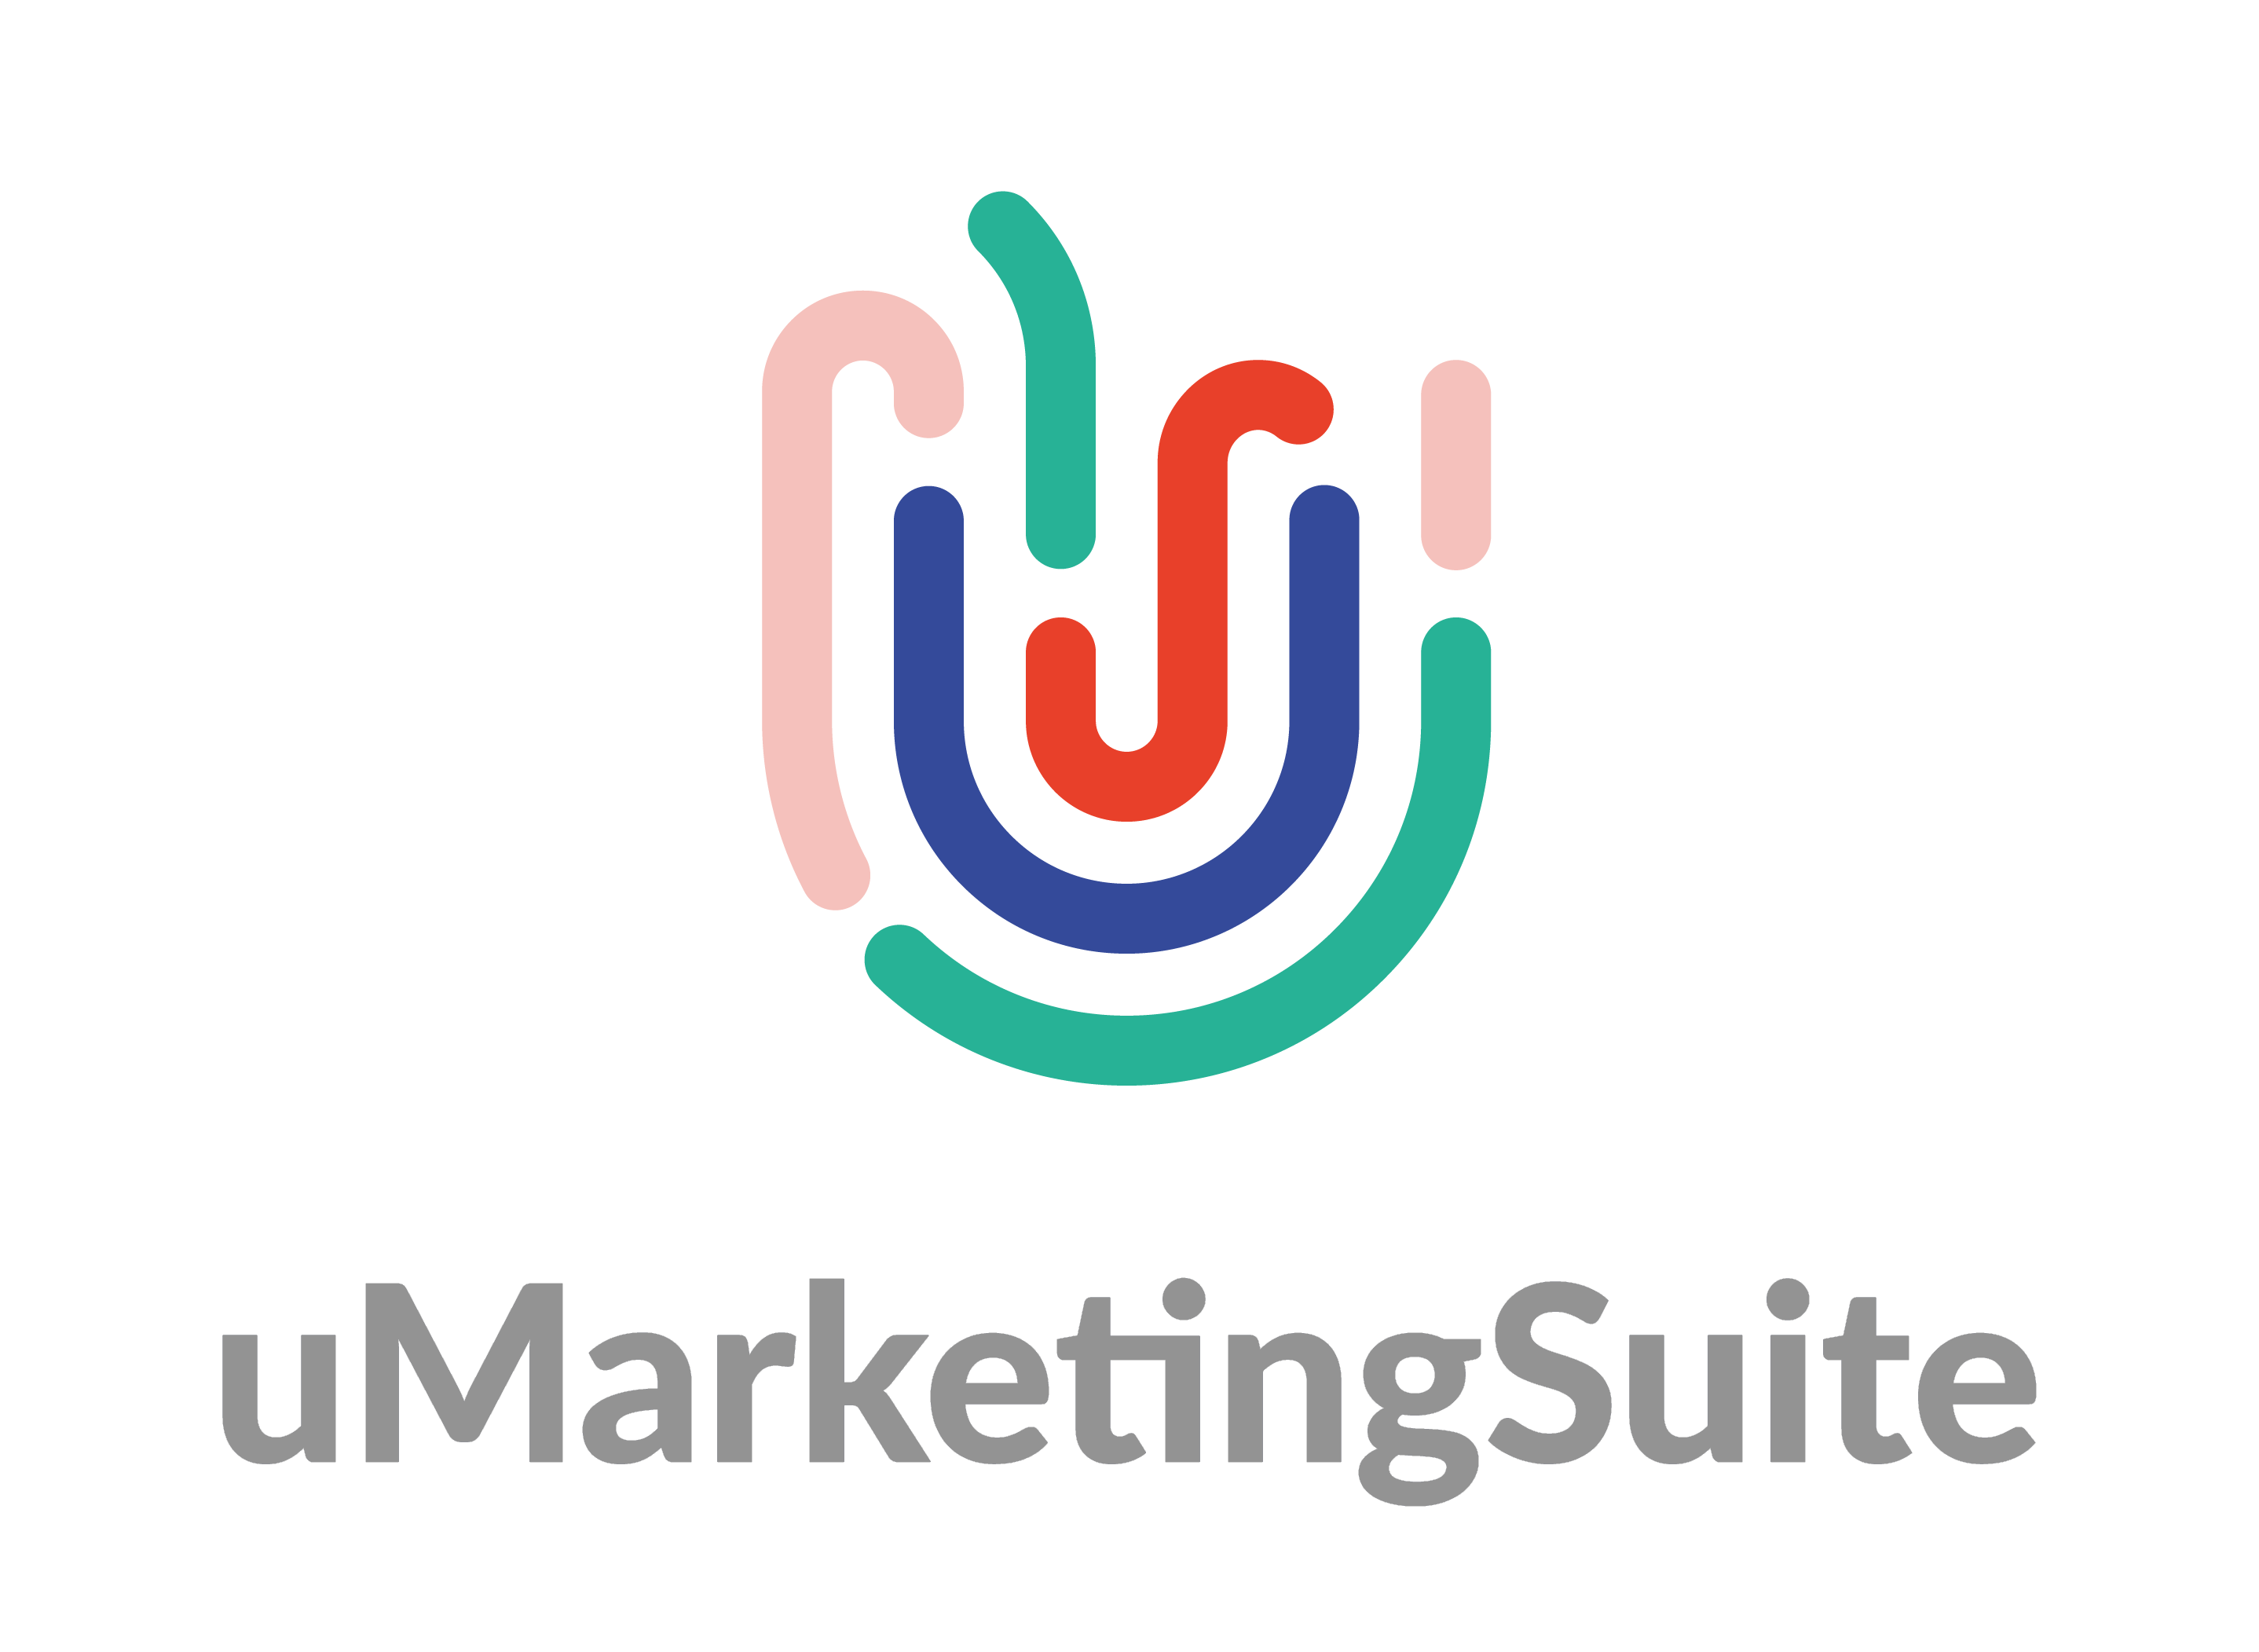 uMarketingSuite logo